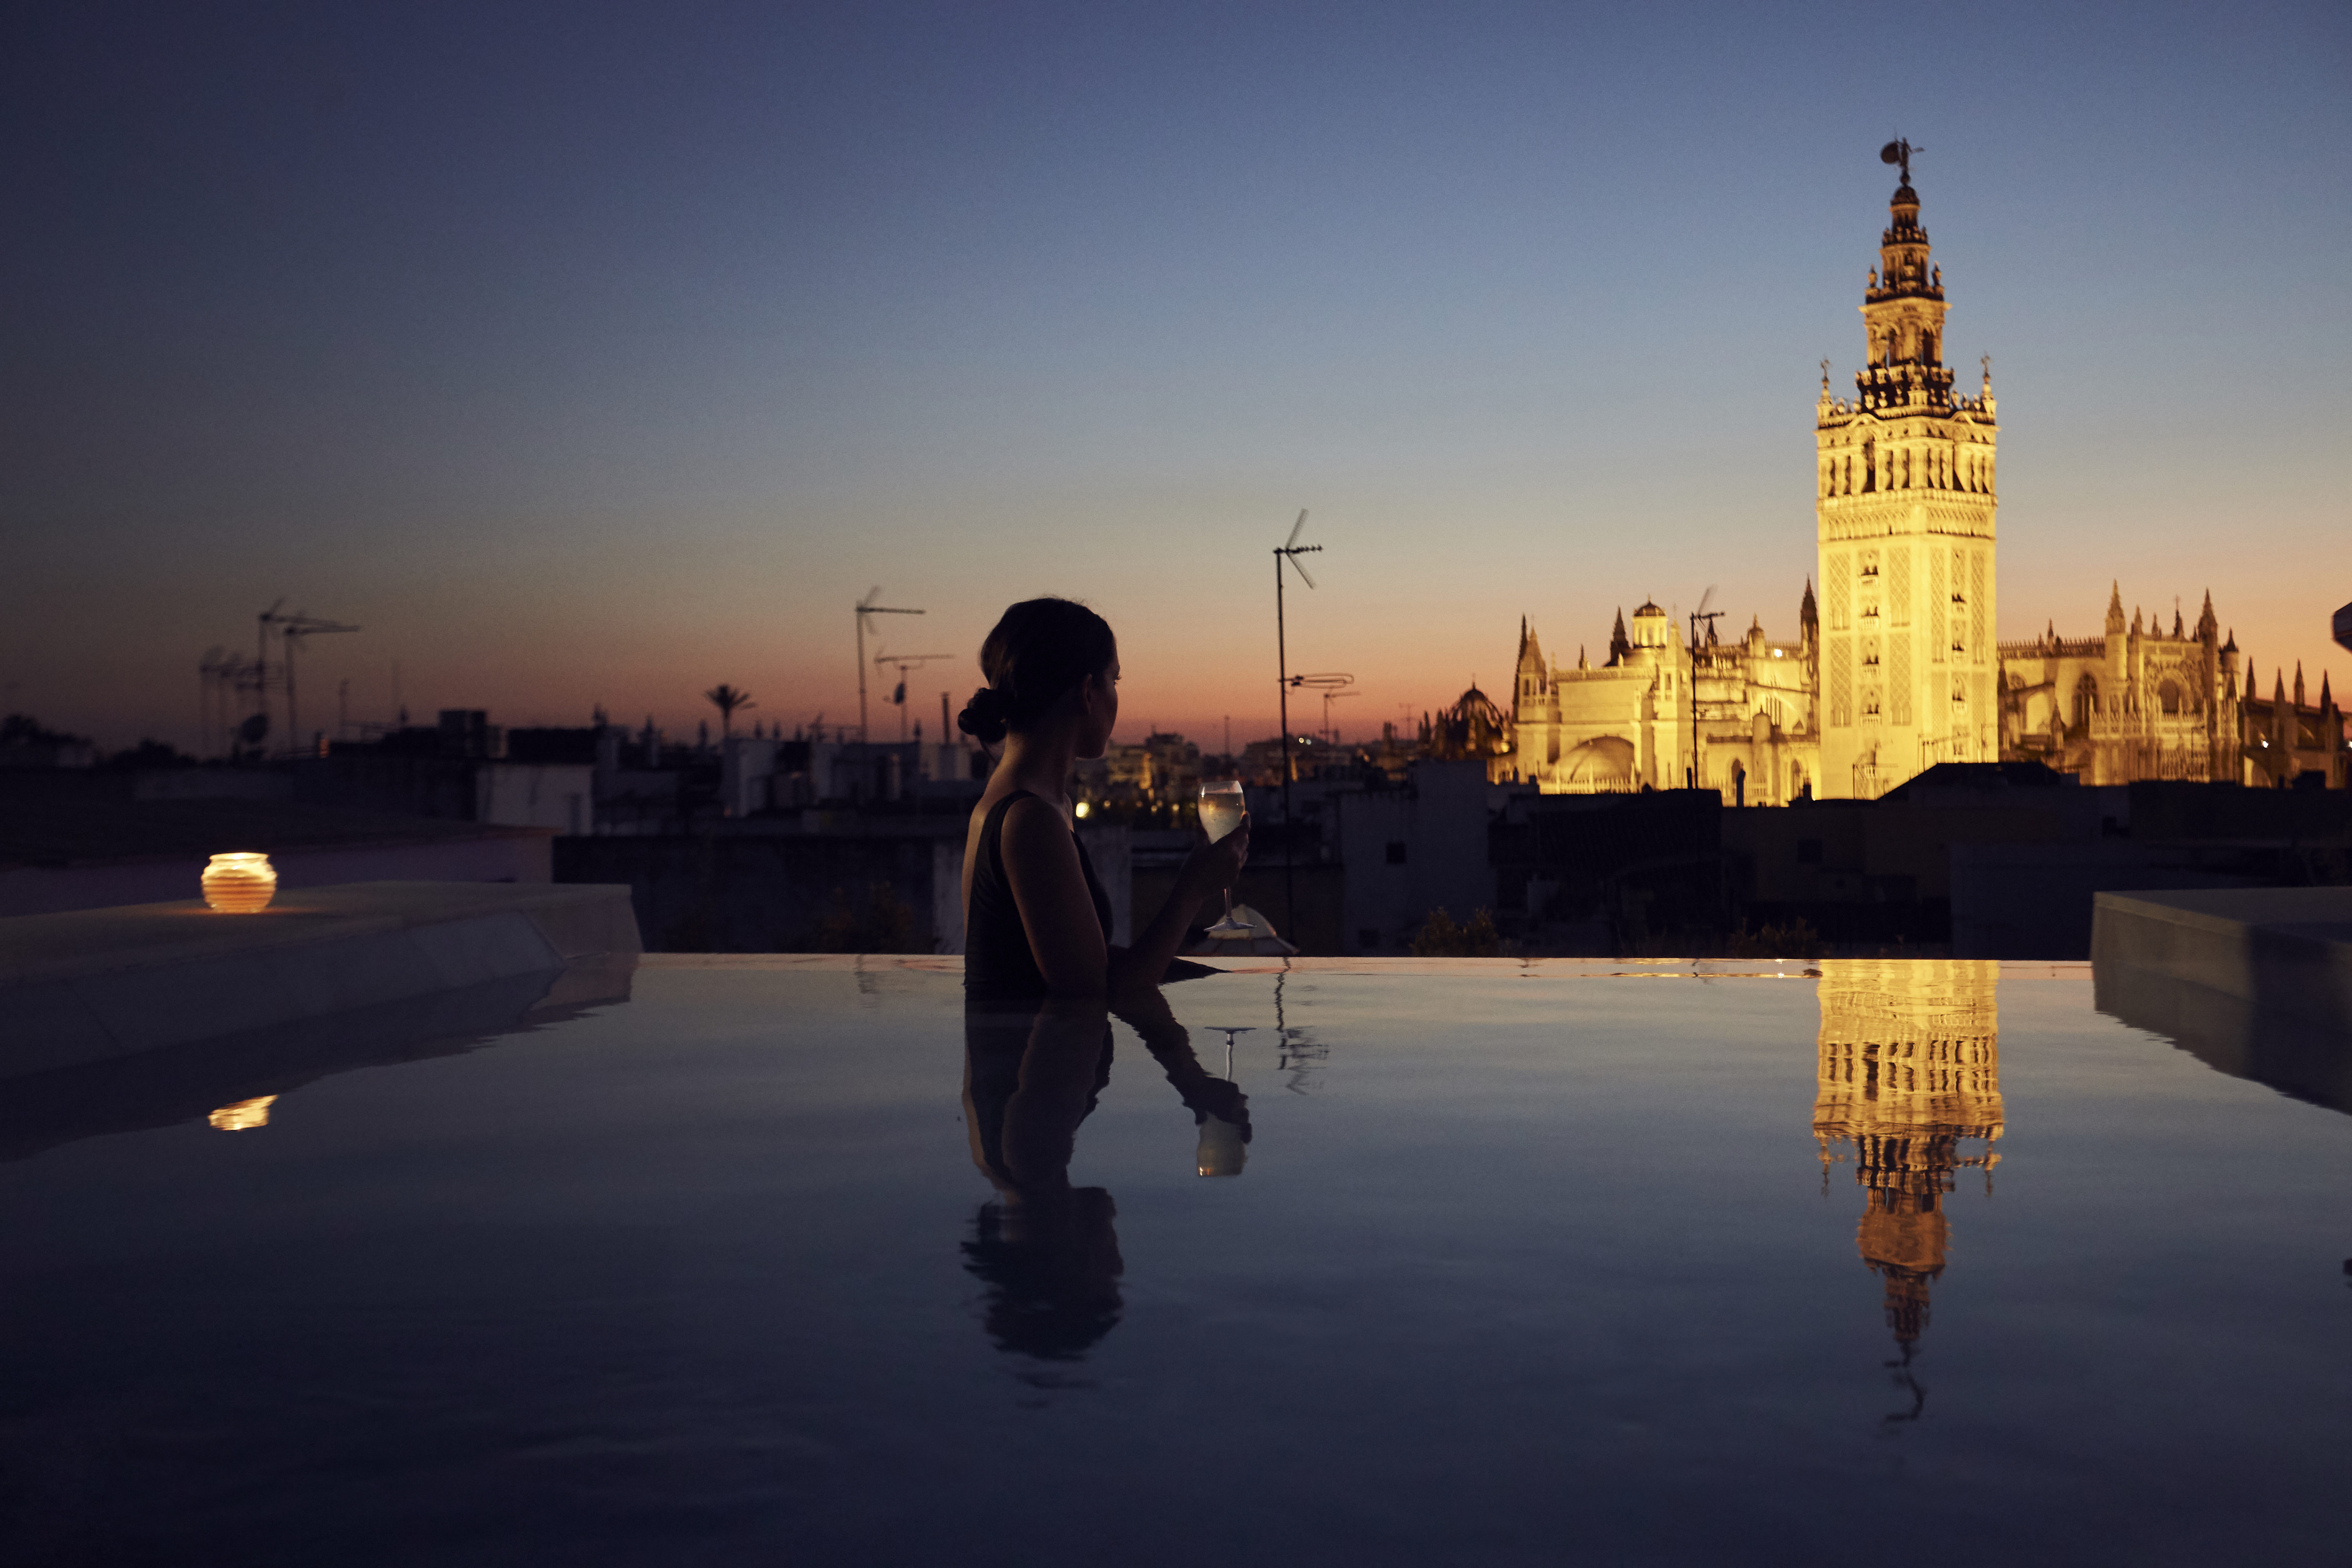 AIRE Ancient Baths Sevilla